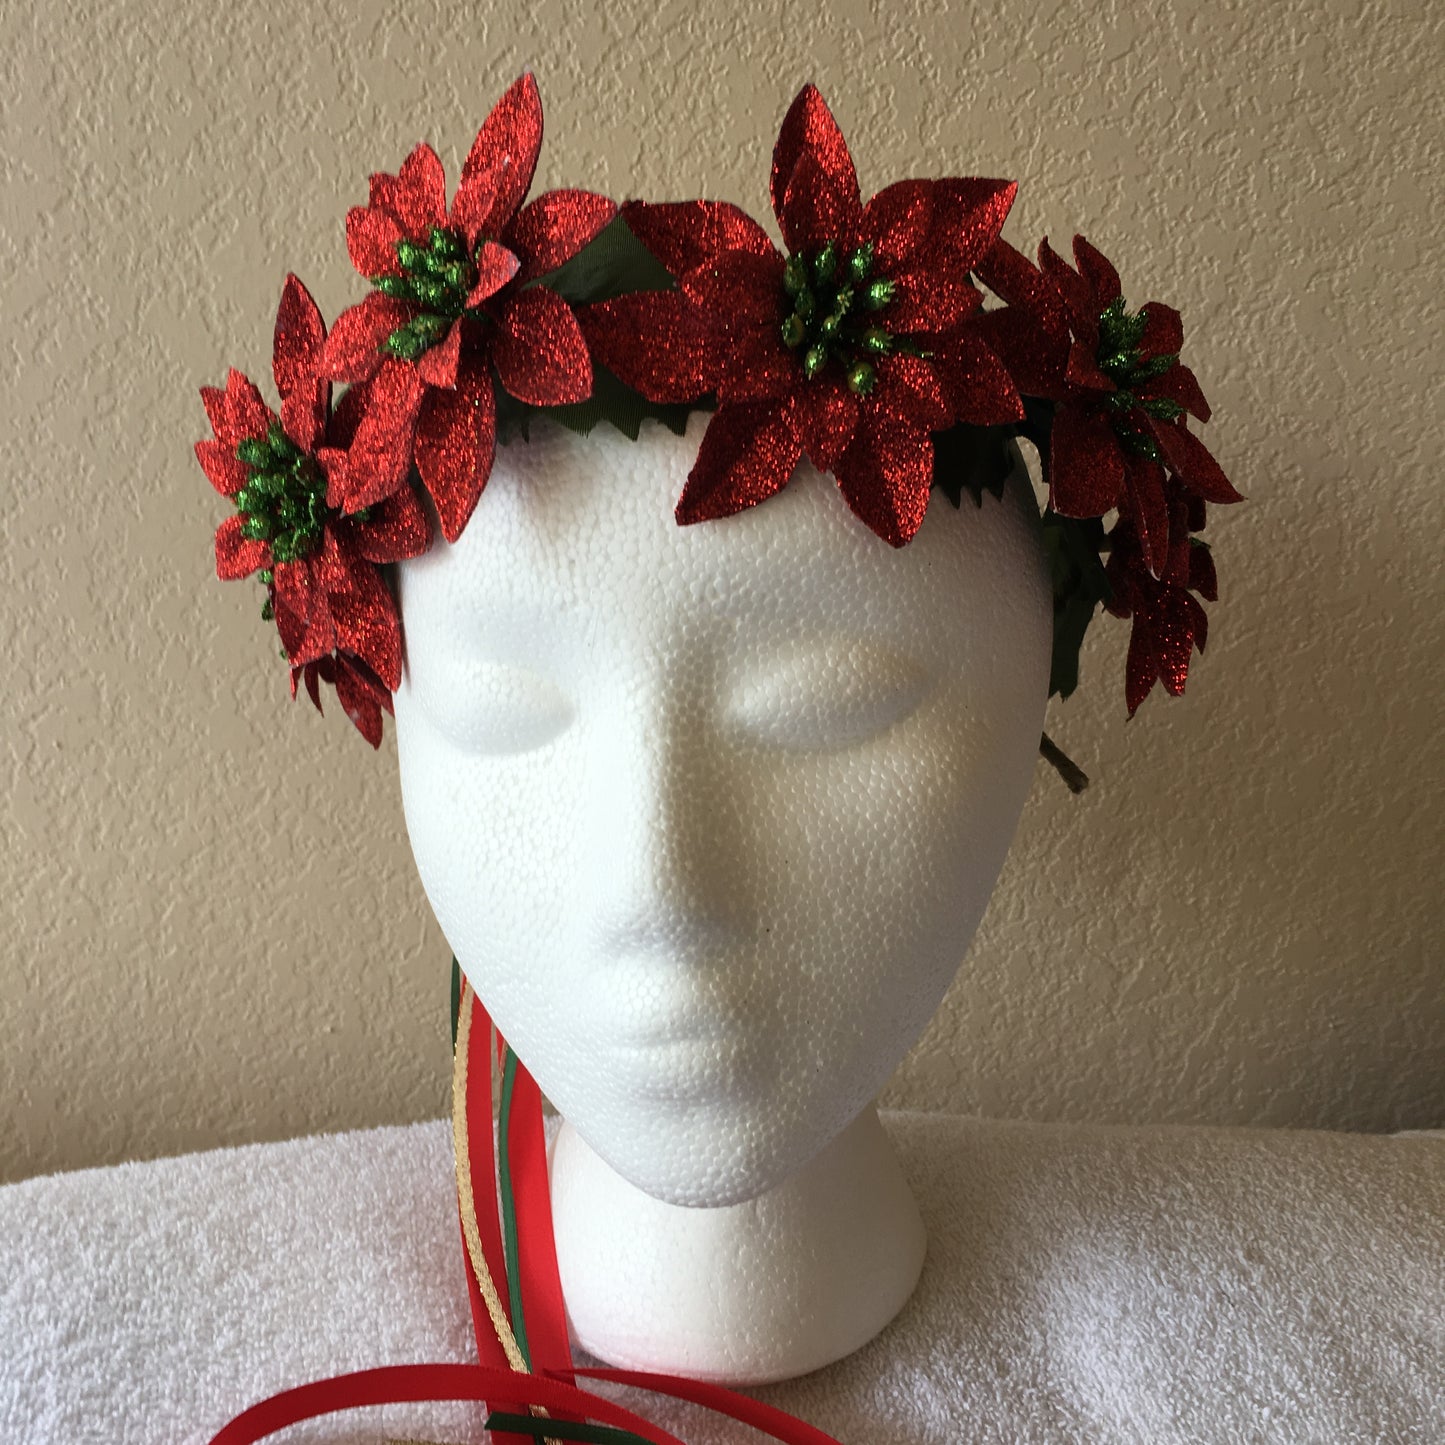 Medium Wreath - Red sparkly poinsettia